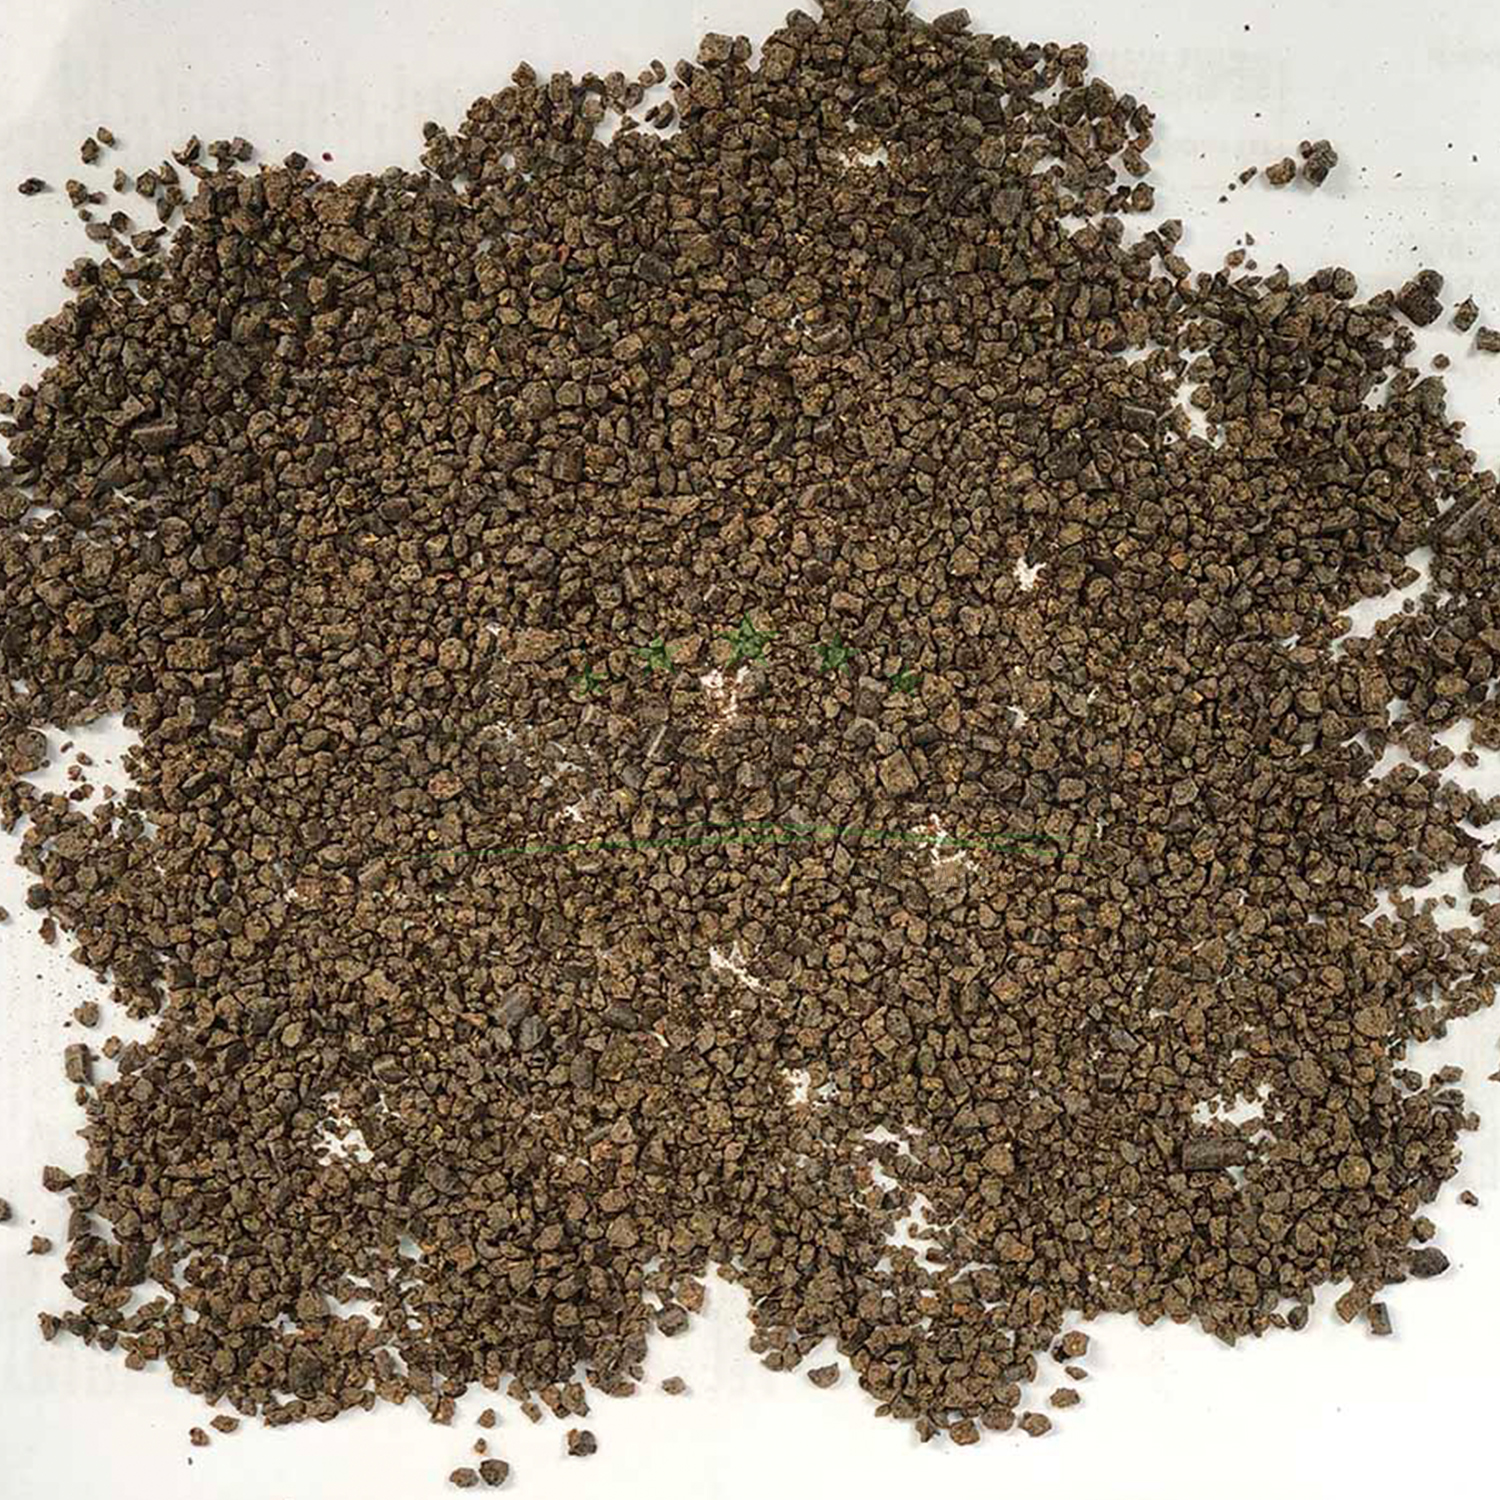 Der Terracur Bodenaktivator enthält nur hochwertige pflanzliche Bestandteile aus nachwachsenden Rohstoffen und ist frei von tierischen Materialien